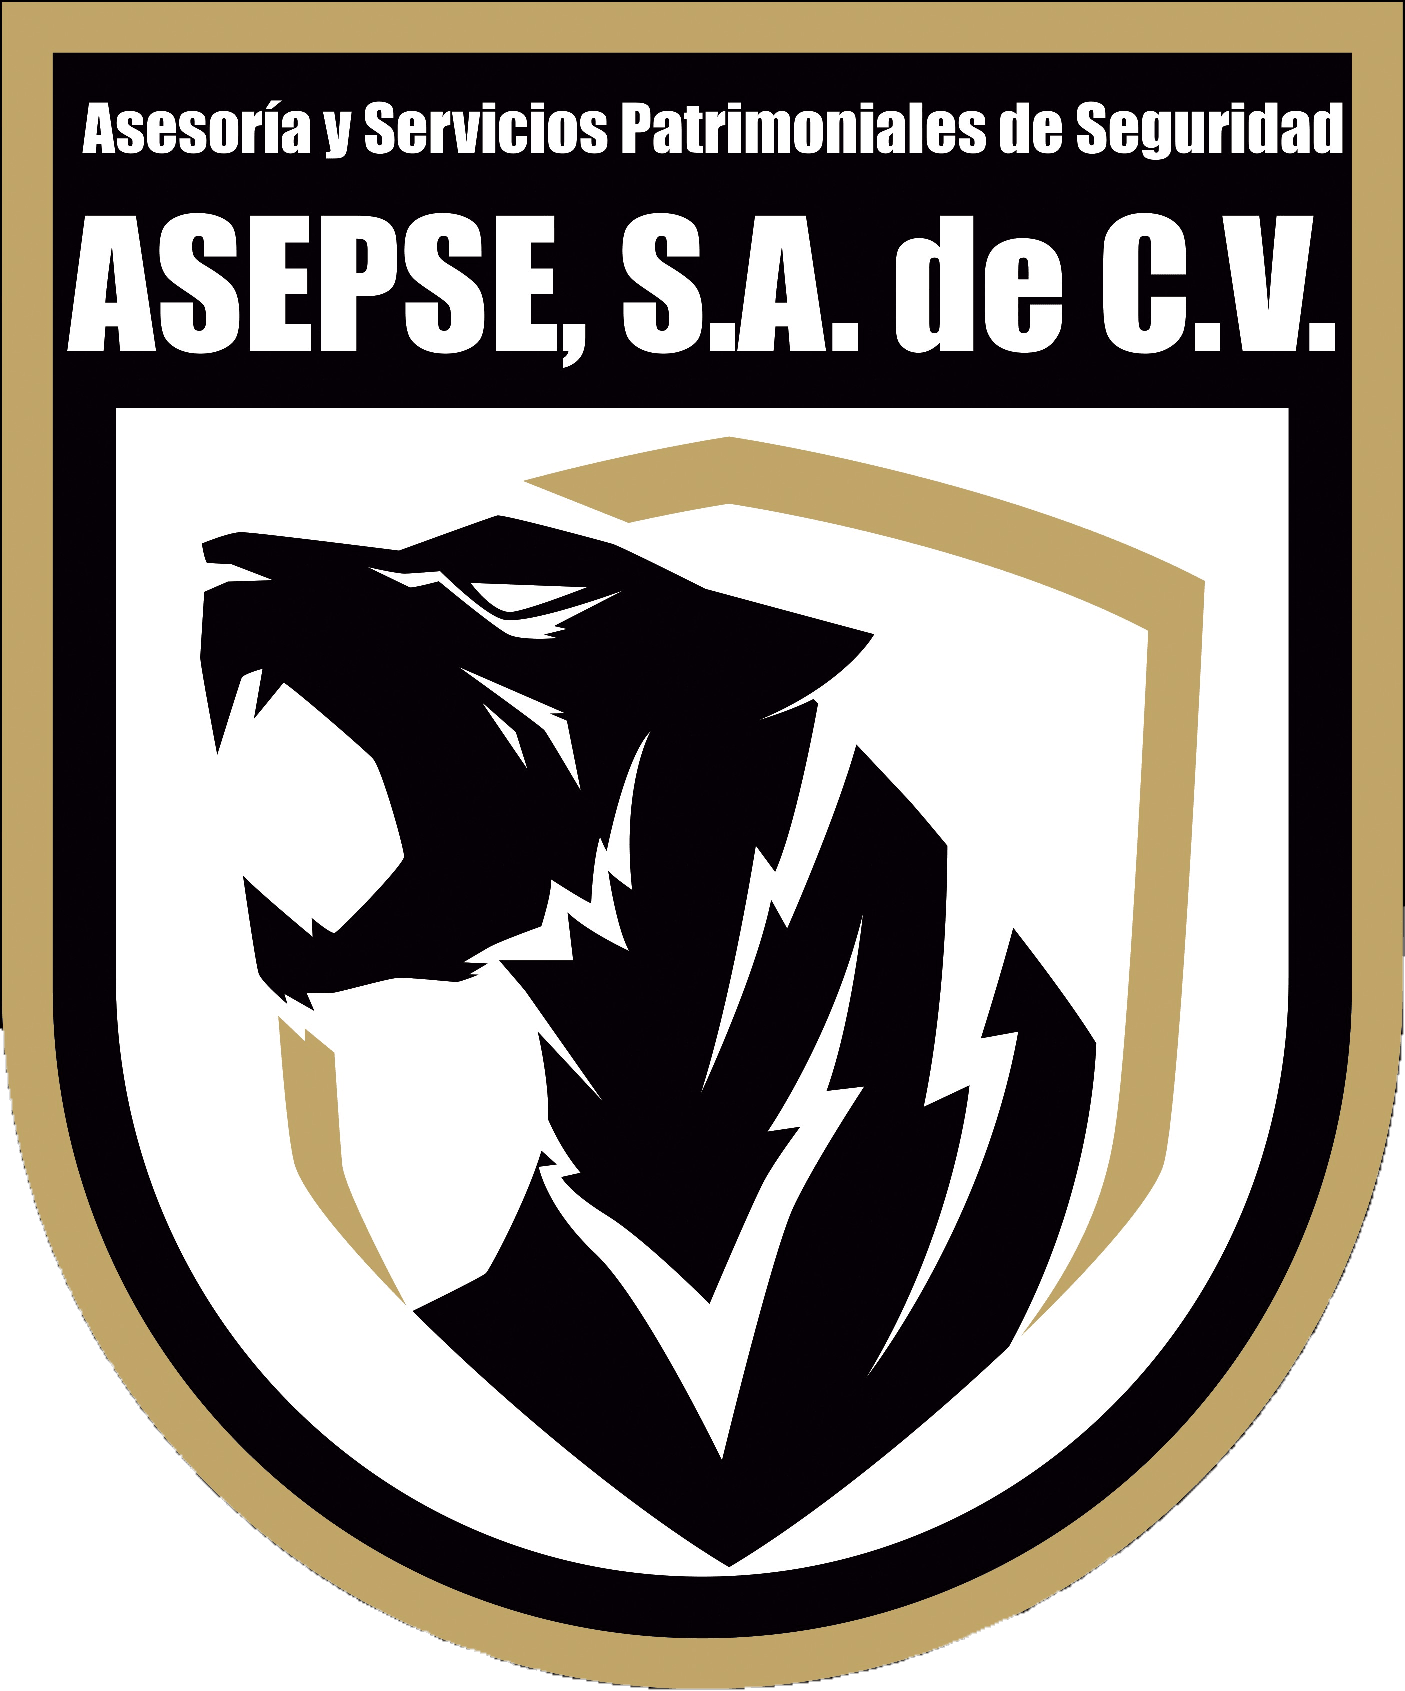 ASEPSE S.A de C.V.